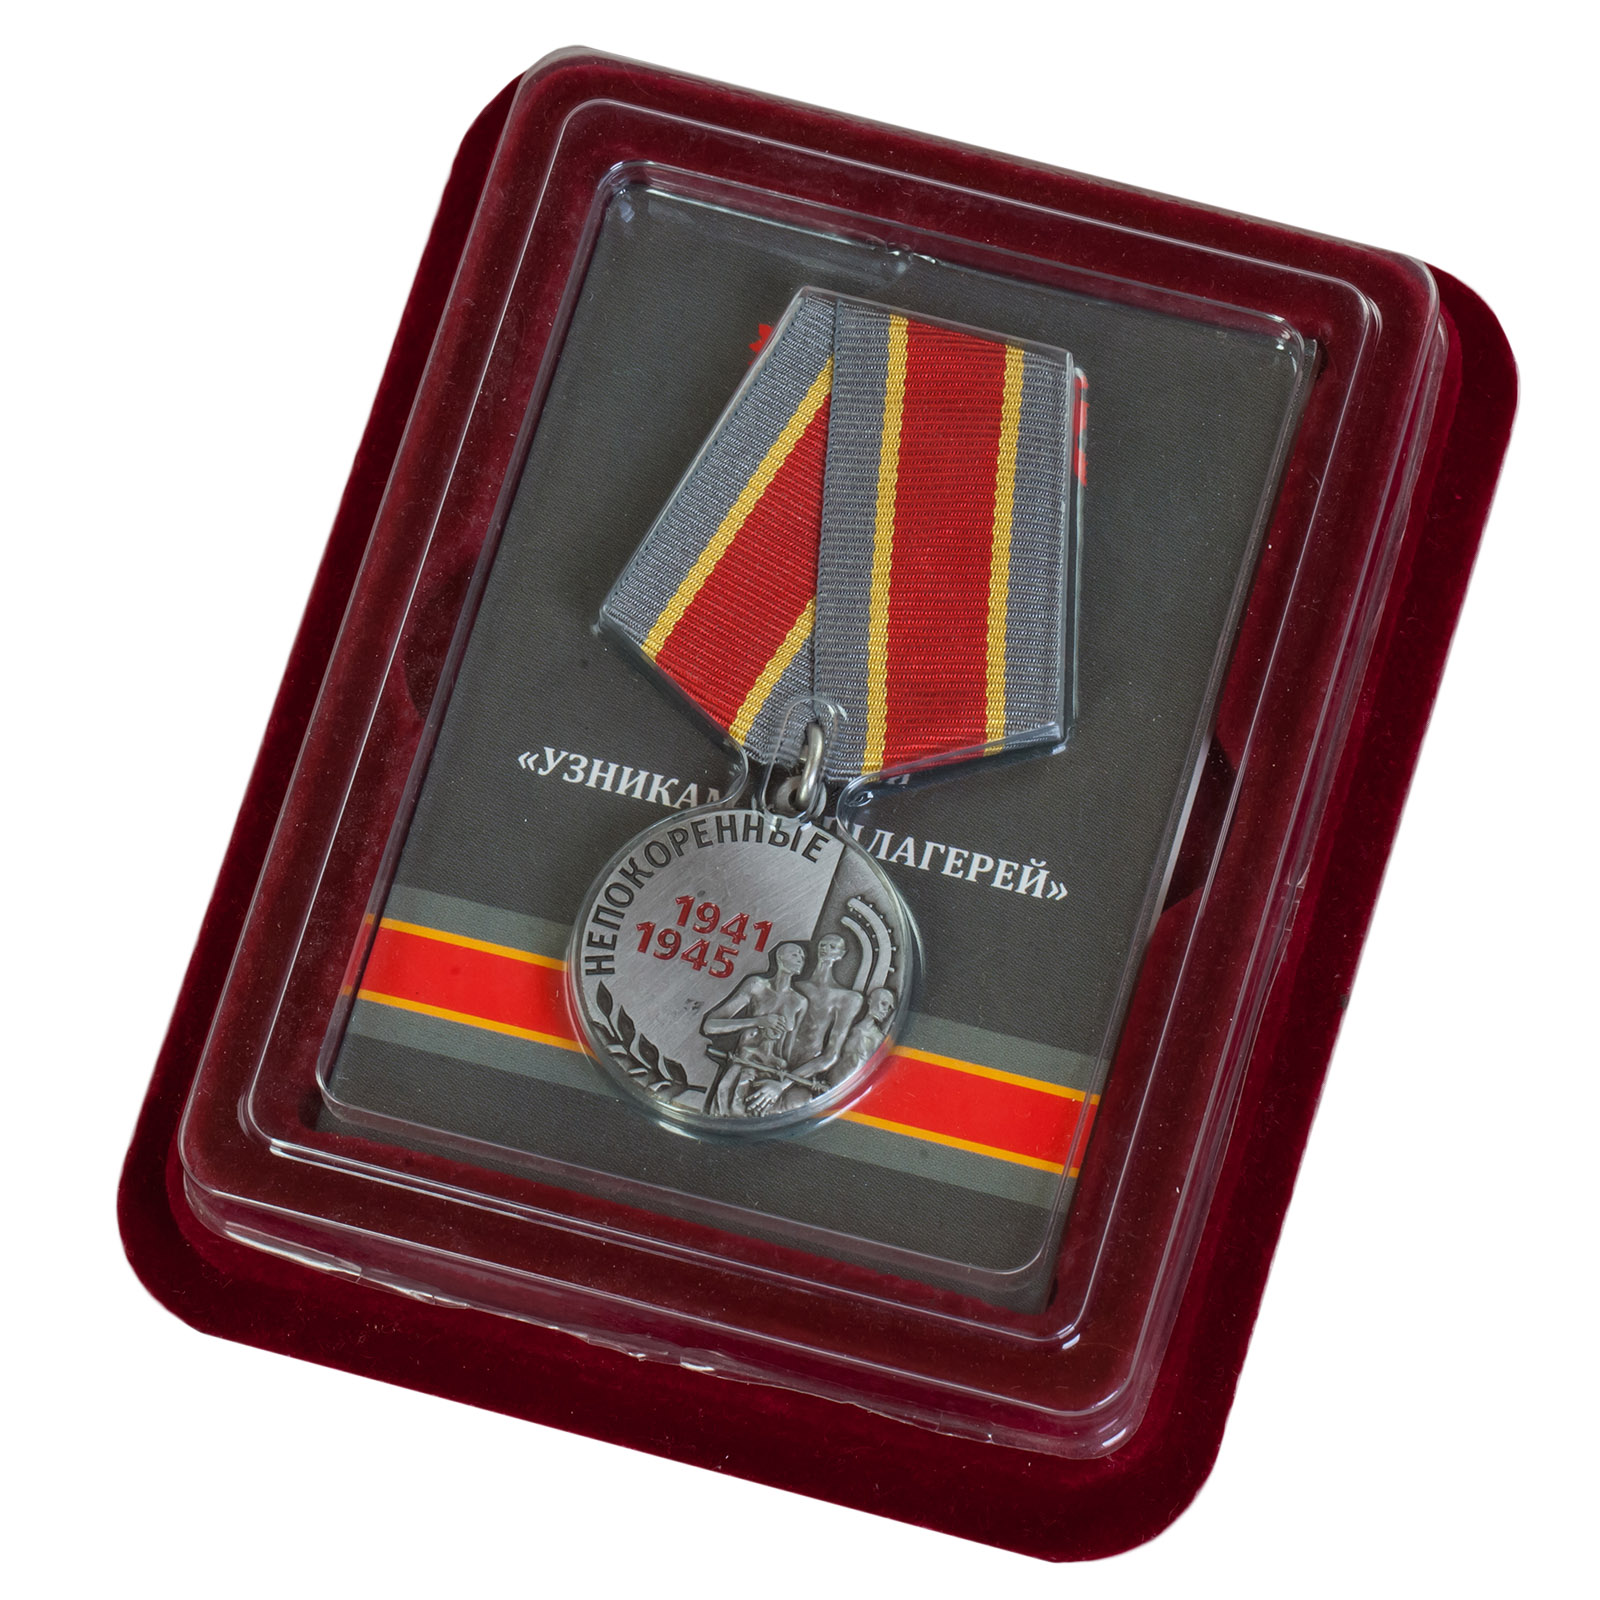 Купить медаль «Узникам концлагерей» в наградном футляре